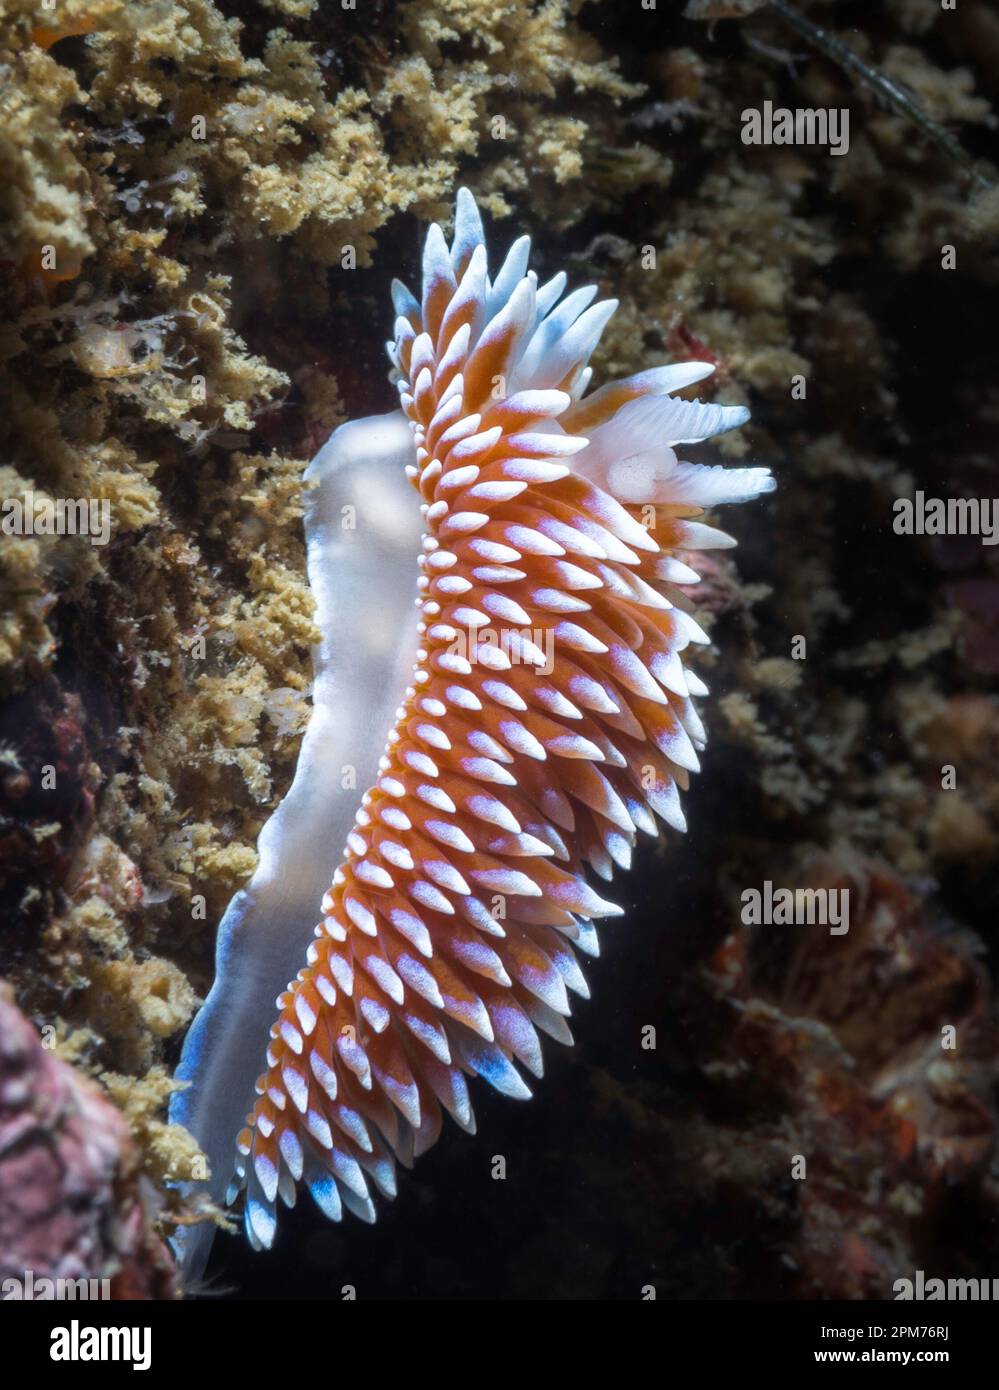 Vista lateral de un nudibranquio del cabo silvertip (Janolus capensis) en el arrecife bajo el agua Foto de stock